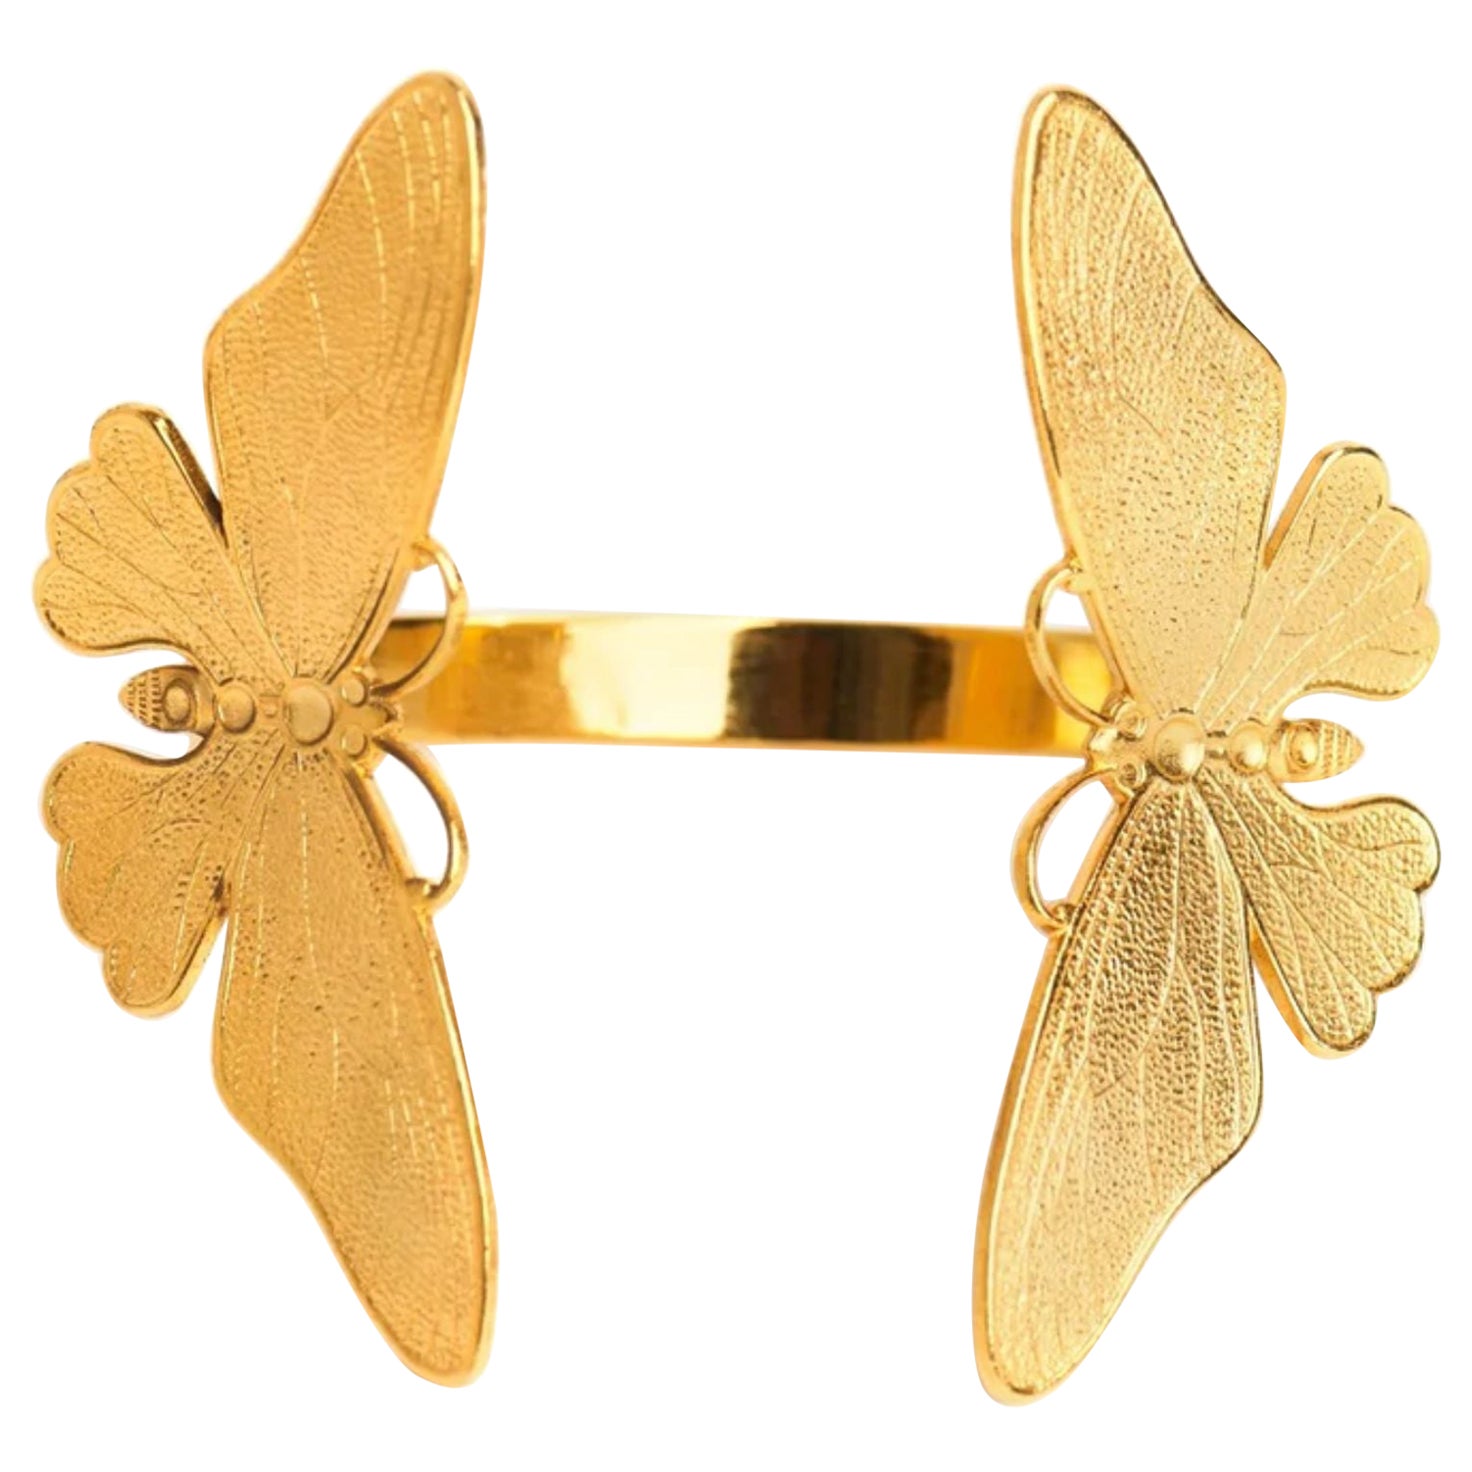 Schmetterlingsmanschette aus 24 Karat Gold mit Schmetterlingssymbolismus